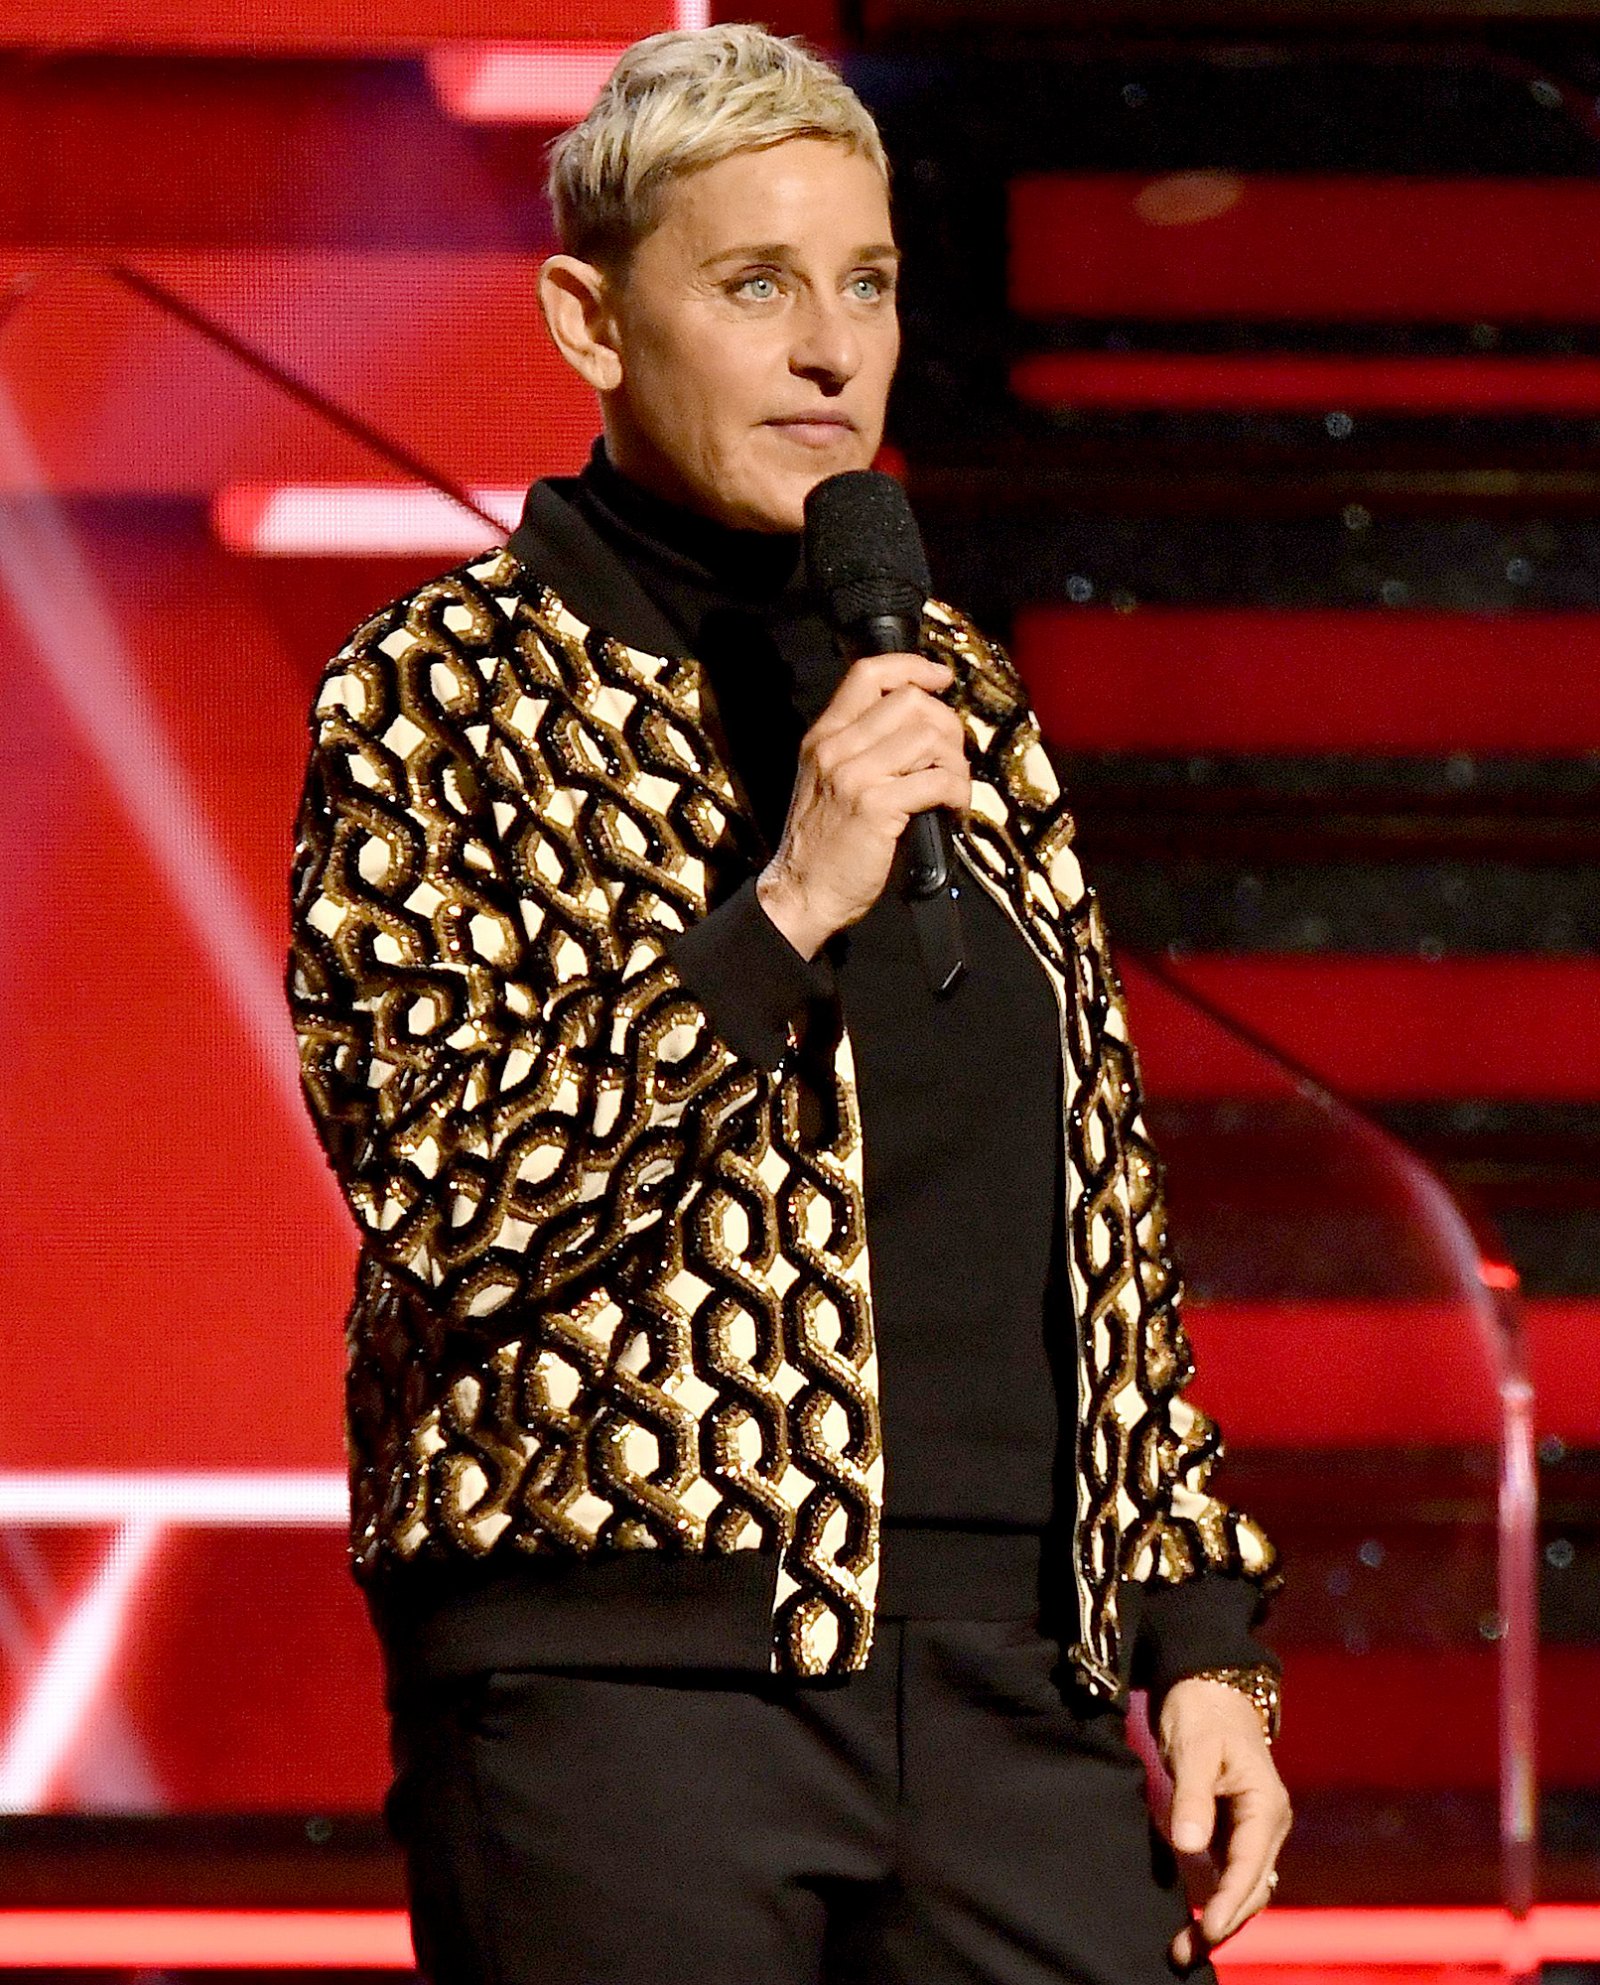 Ellen DeGeneres charitable